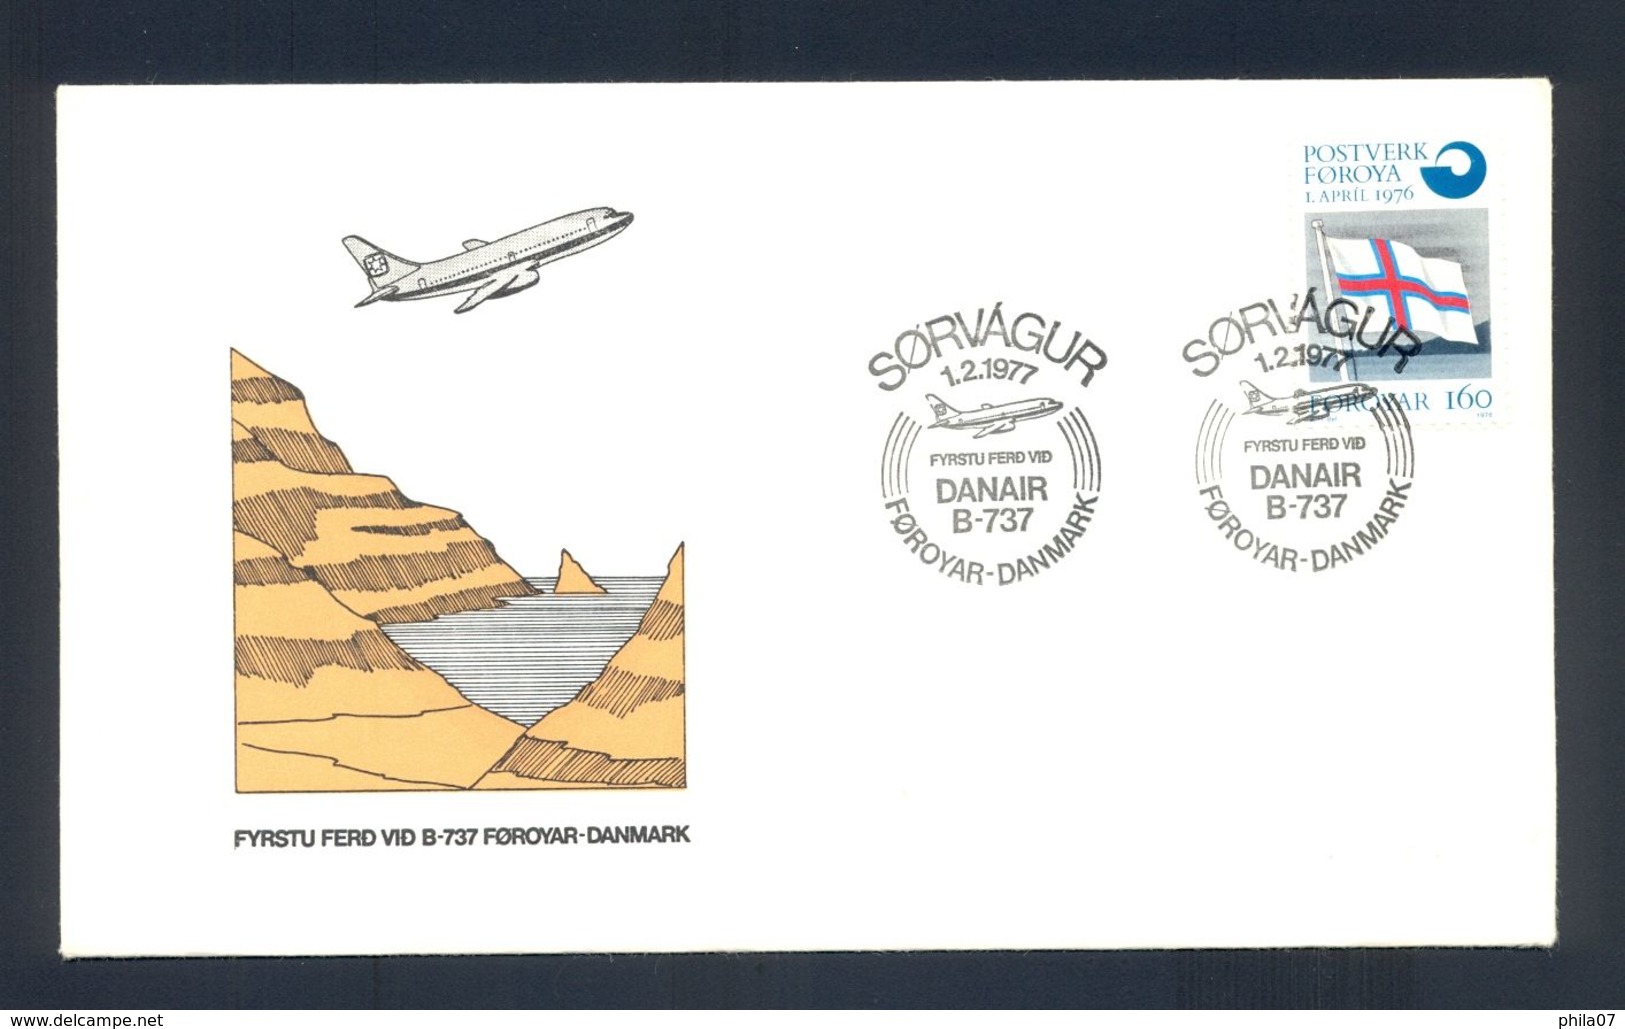 FOROYAR-DENMARK 1977 - FDC - Commemorative First Flight Cancel On Air Mail Cover Foroyar-Danmark, DANAIR B-737. - Féroé (Iles)